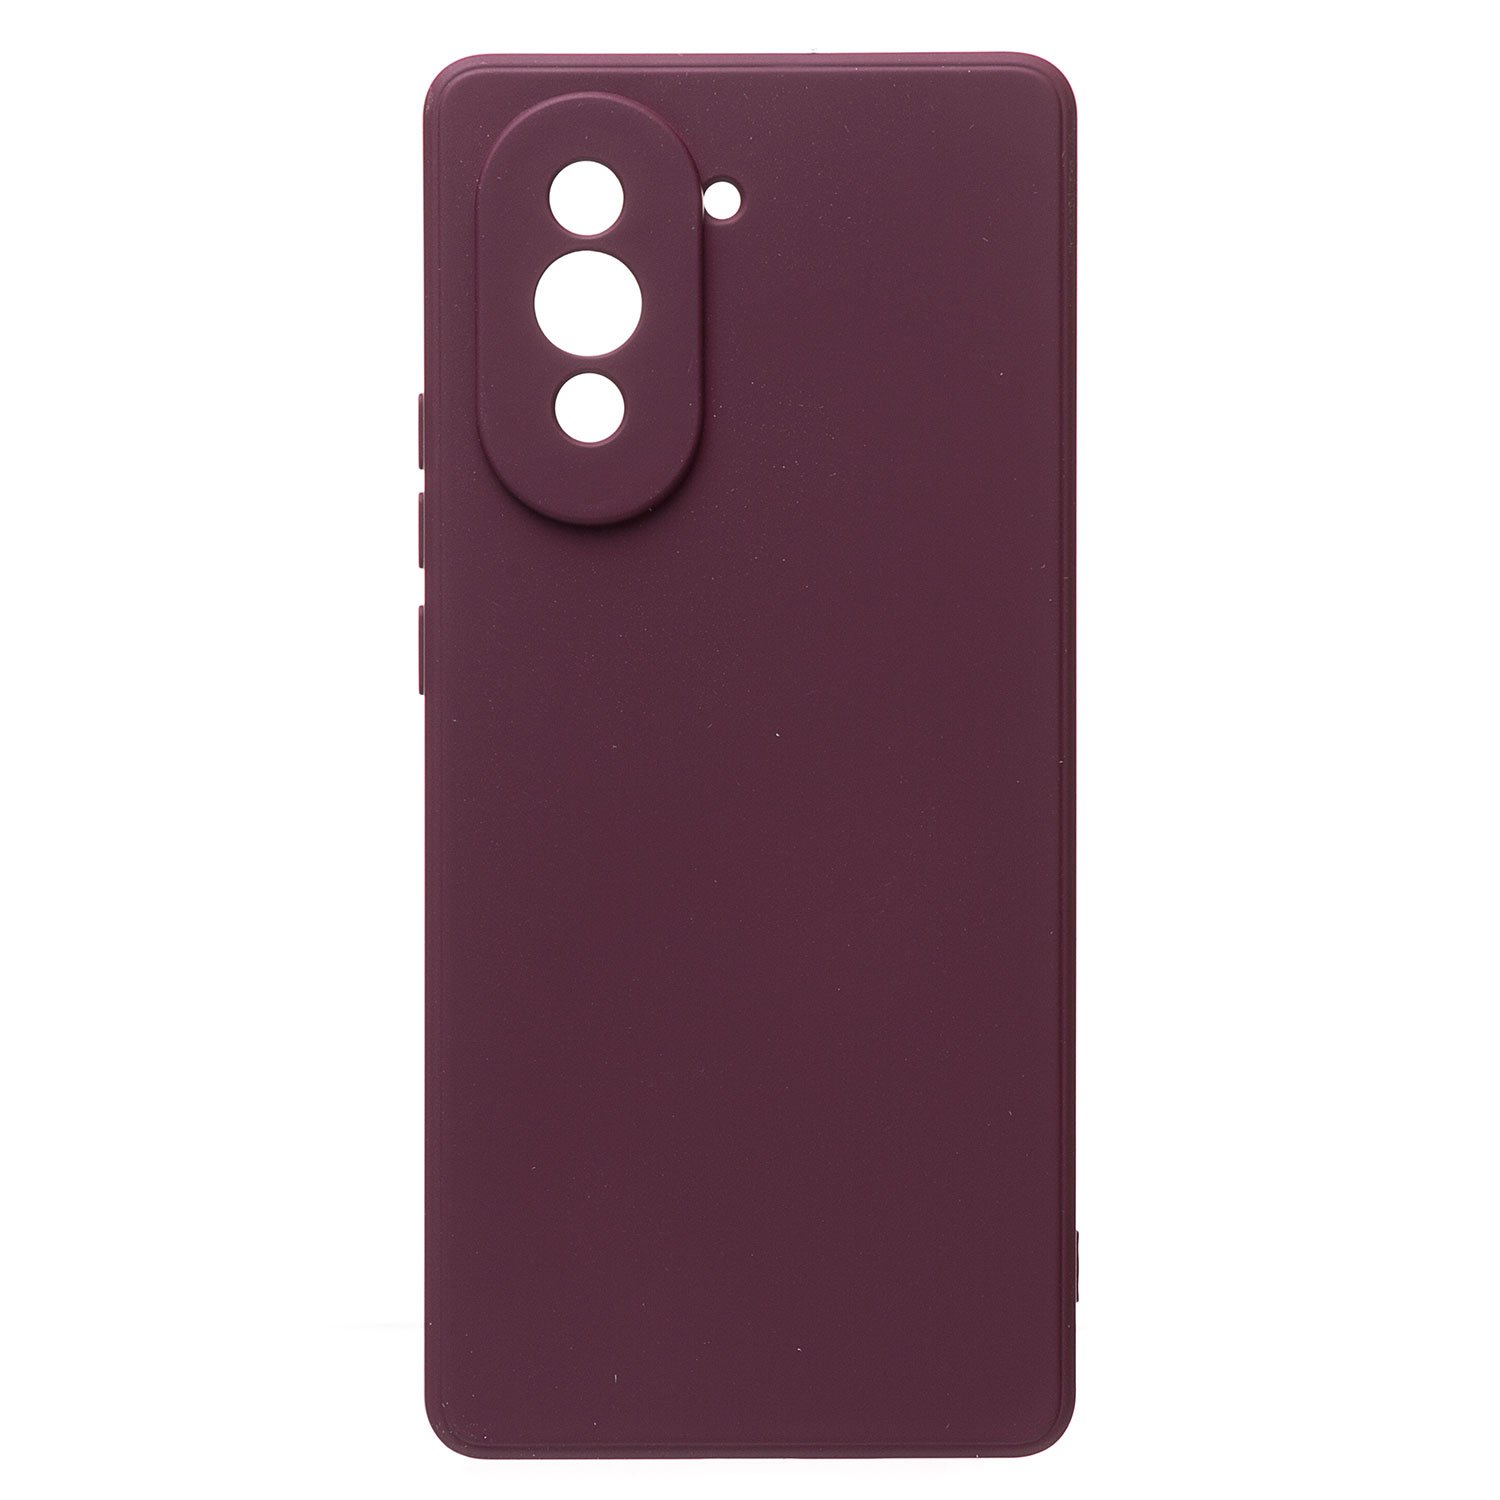 Чехол-накладка Activ Full Original Design для смартфона Huawei nova 10, силикон, бордовый (210084)